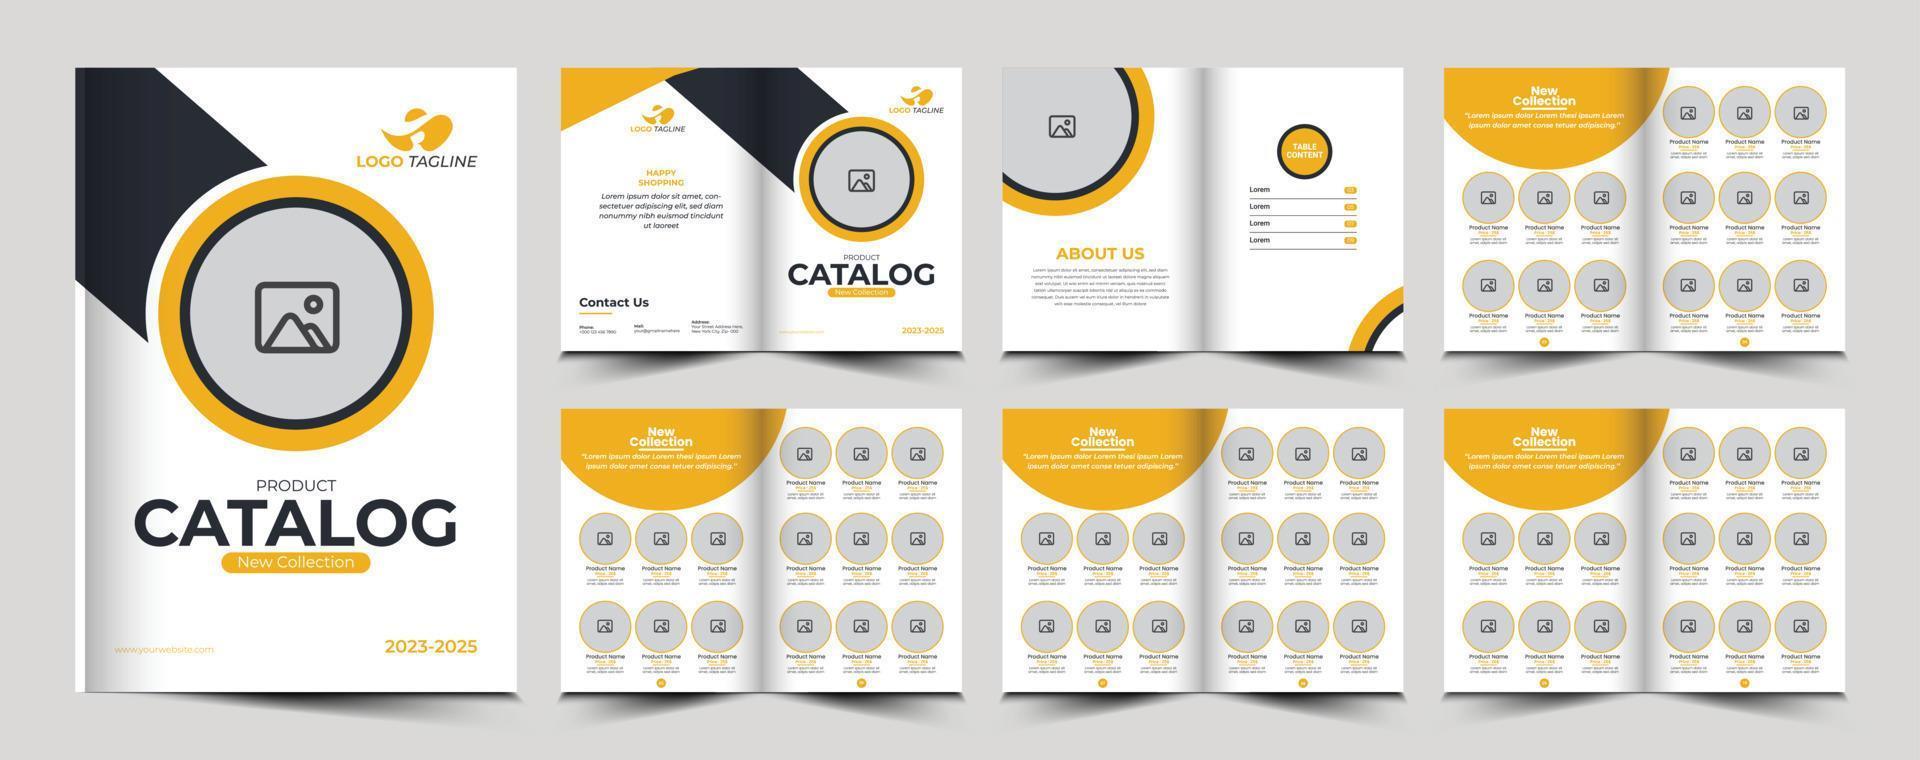 Produkt Katalog oder Katalog Vorlage Design vektor